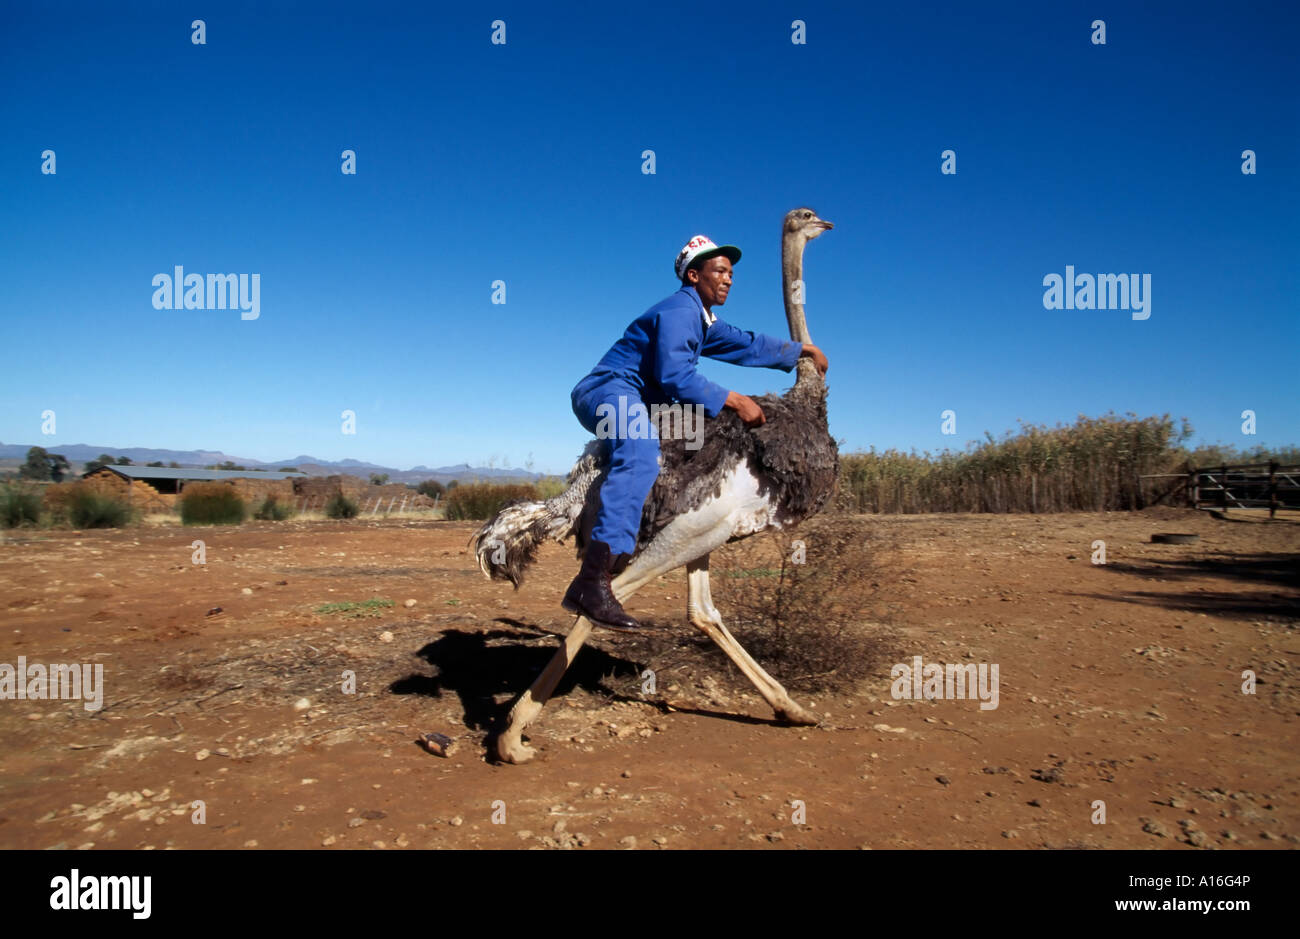 Mitarbeiter zeigen ein Strauß auf einem Strauß Reiten Bauernhof Kleine Karoo in Südafrika Stockfoto